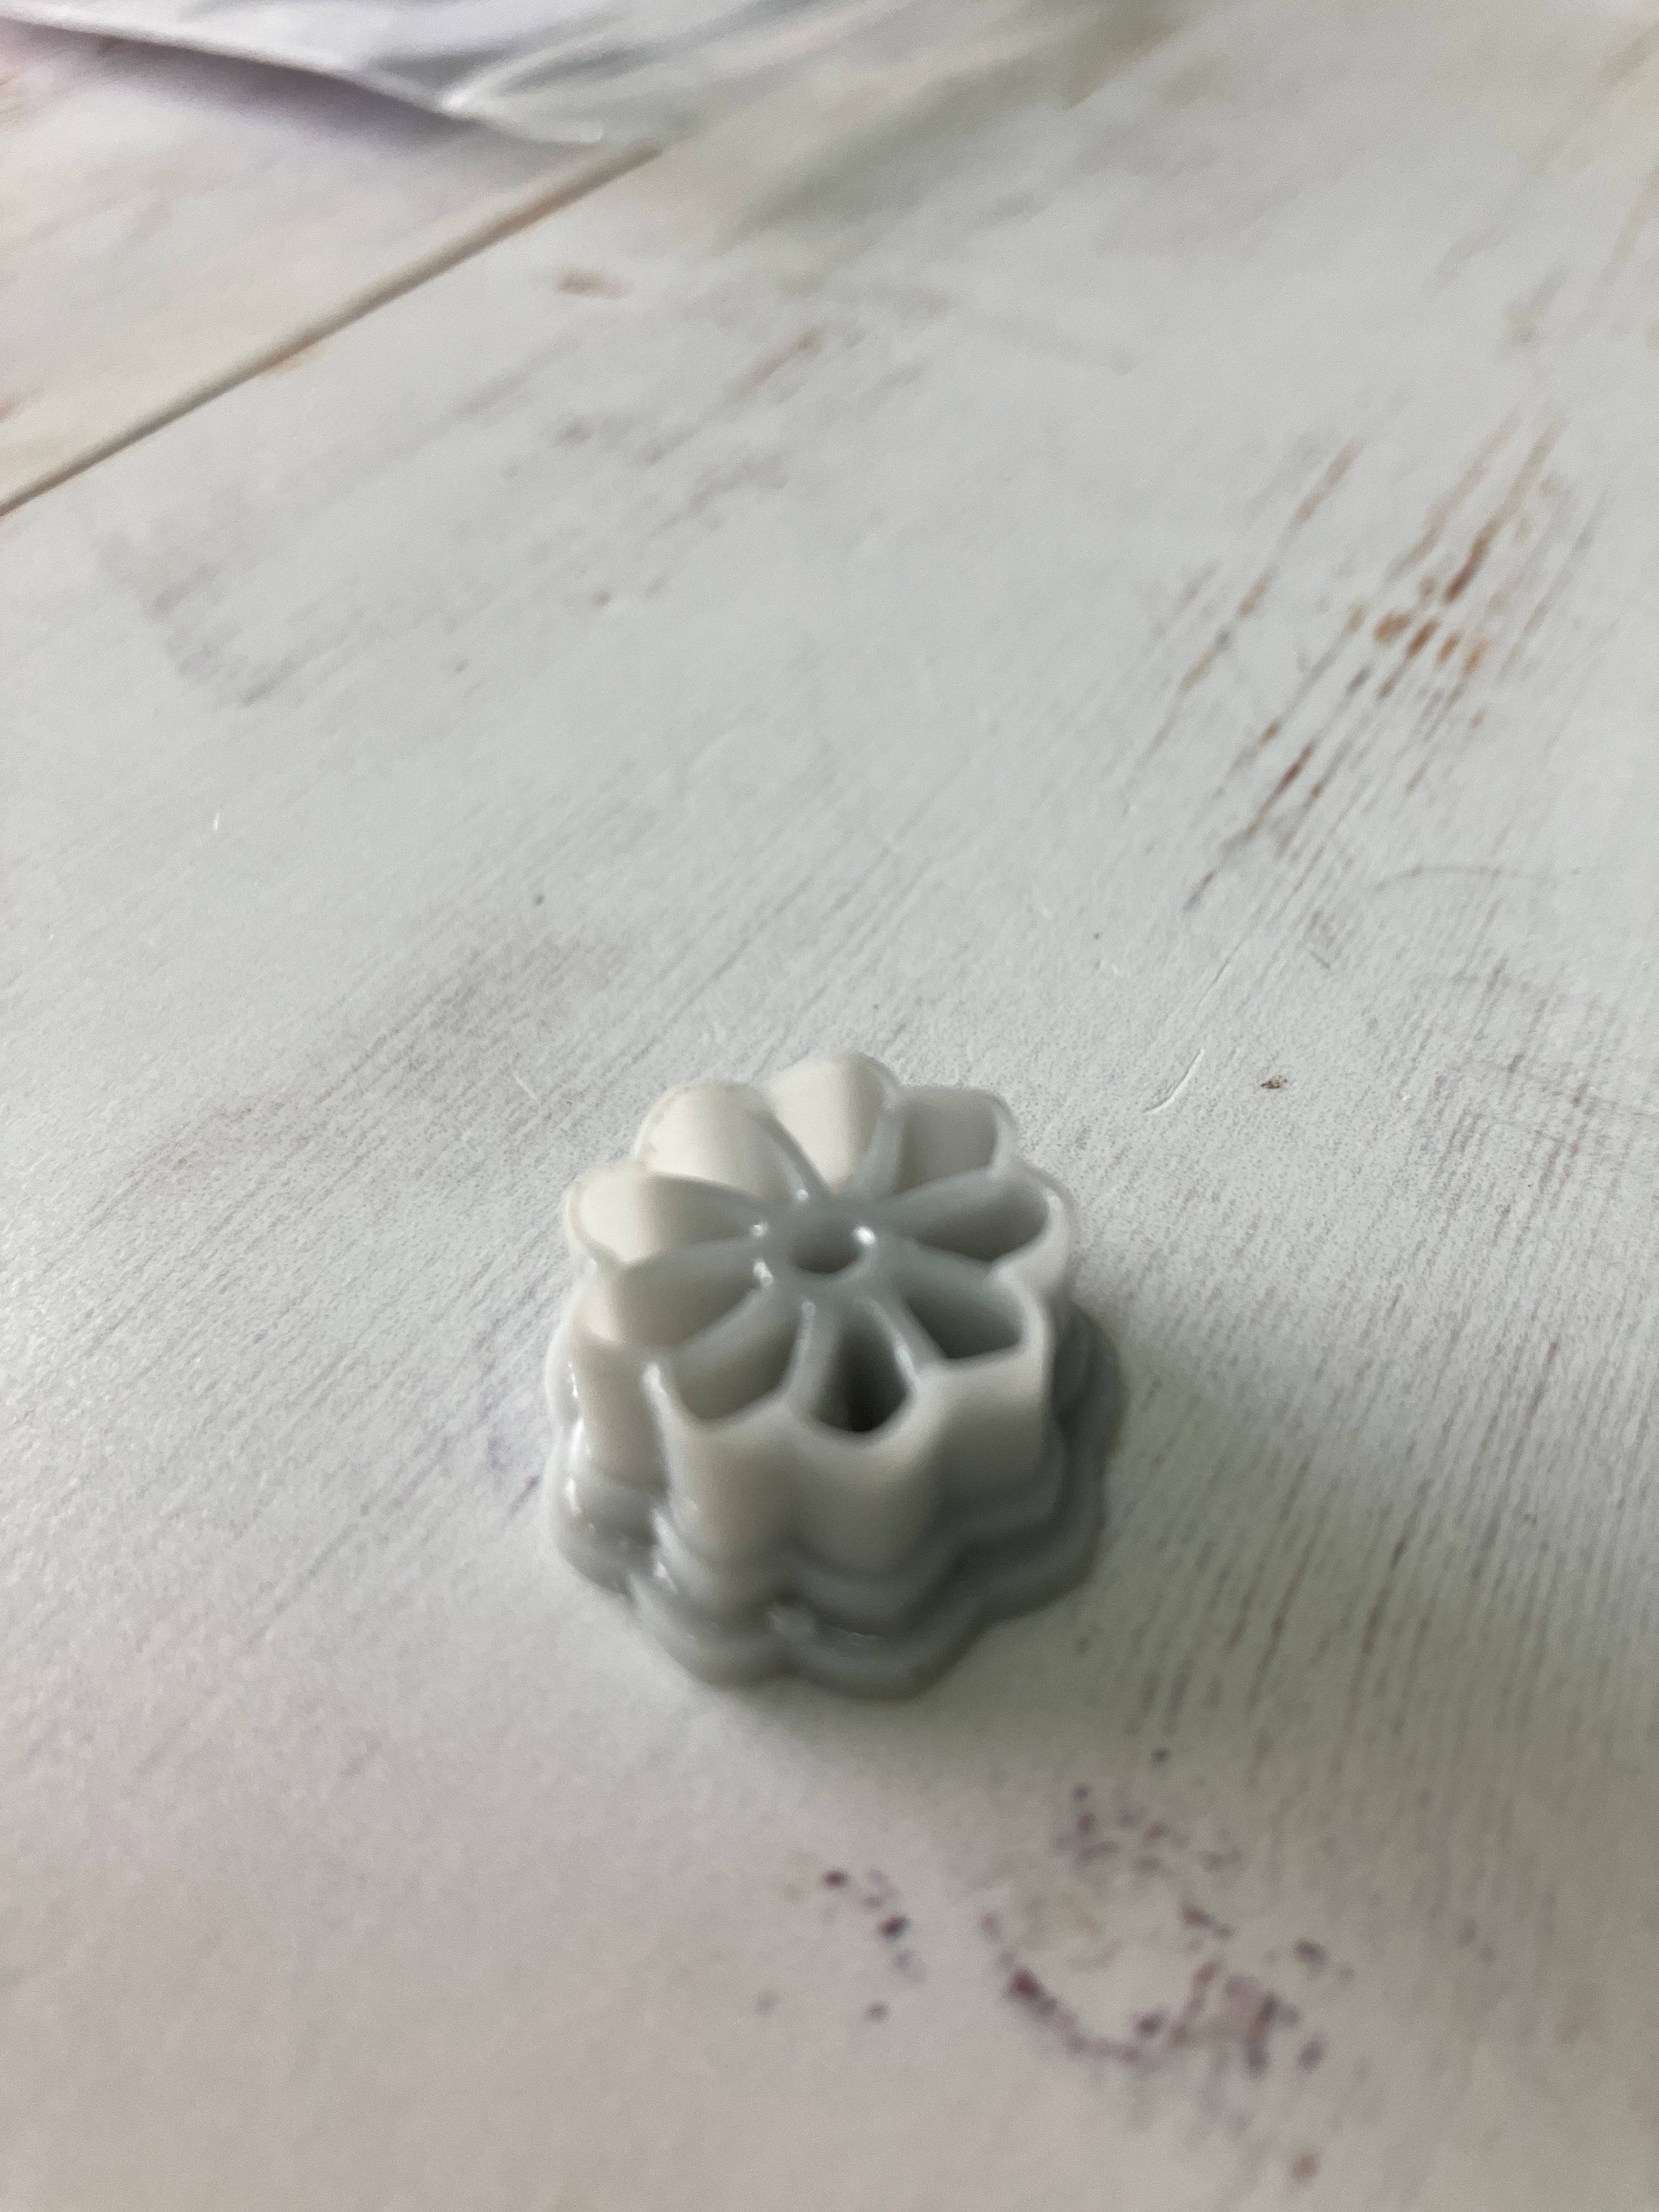 3D Gizmo's - Dainty Flower